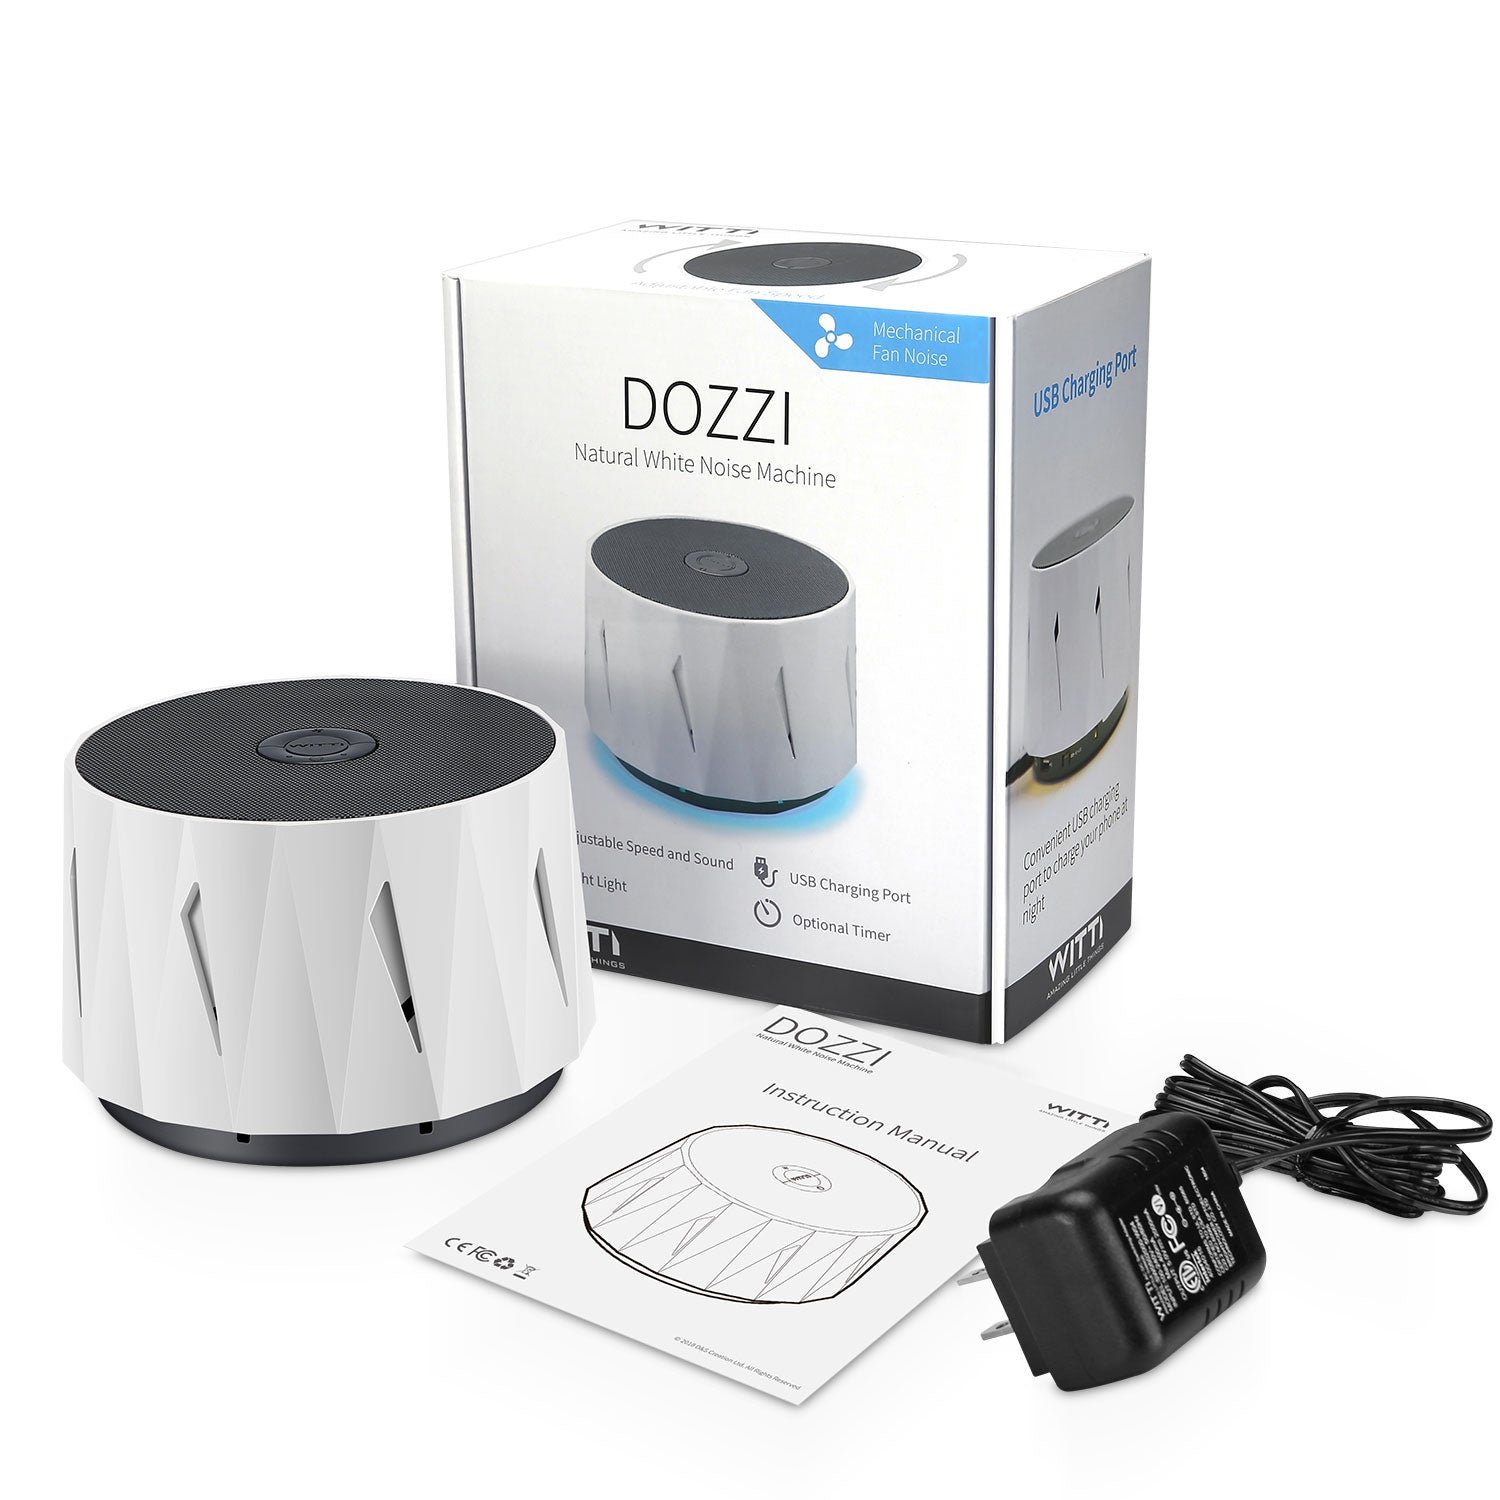 DOZZI - Natural White Noise Machine